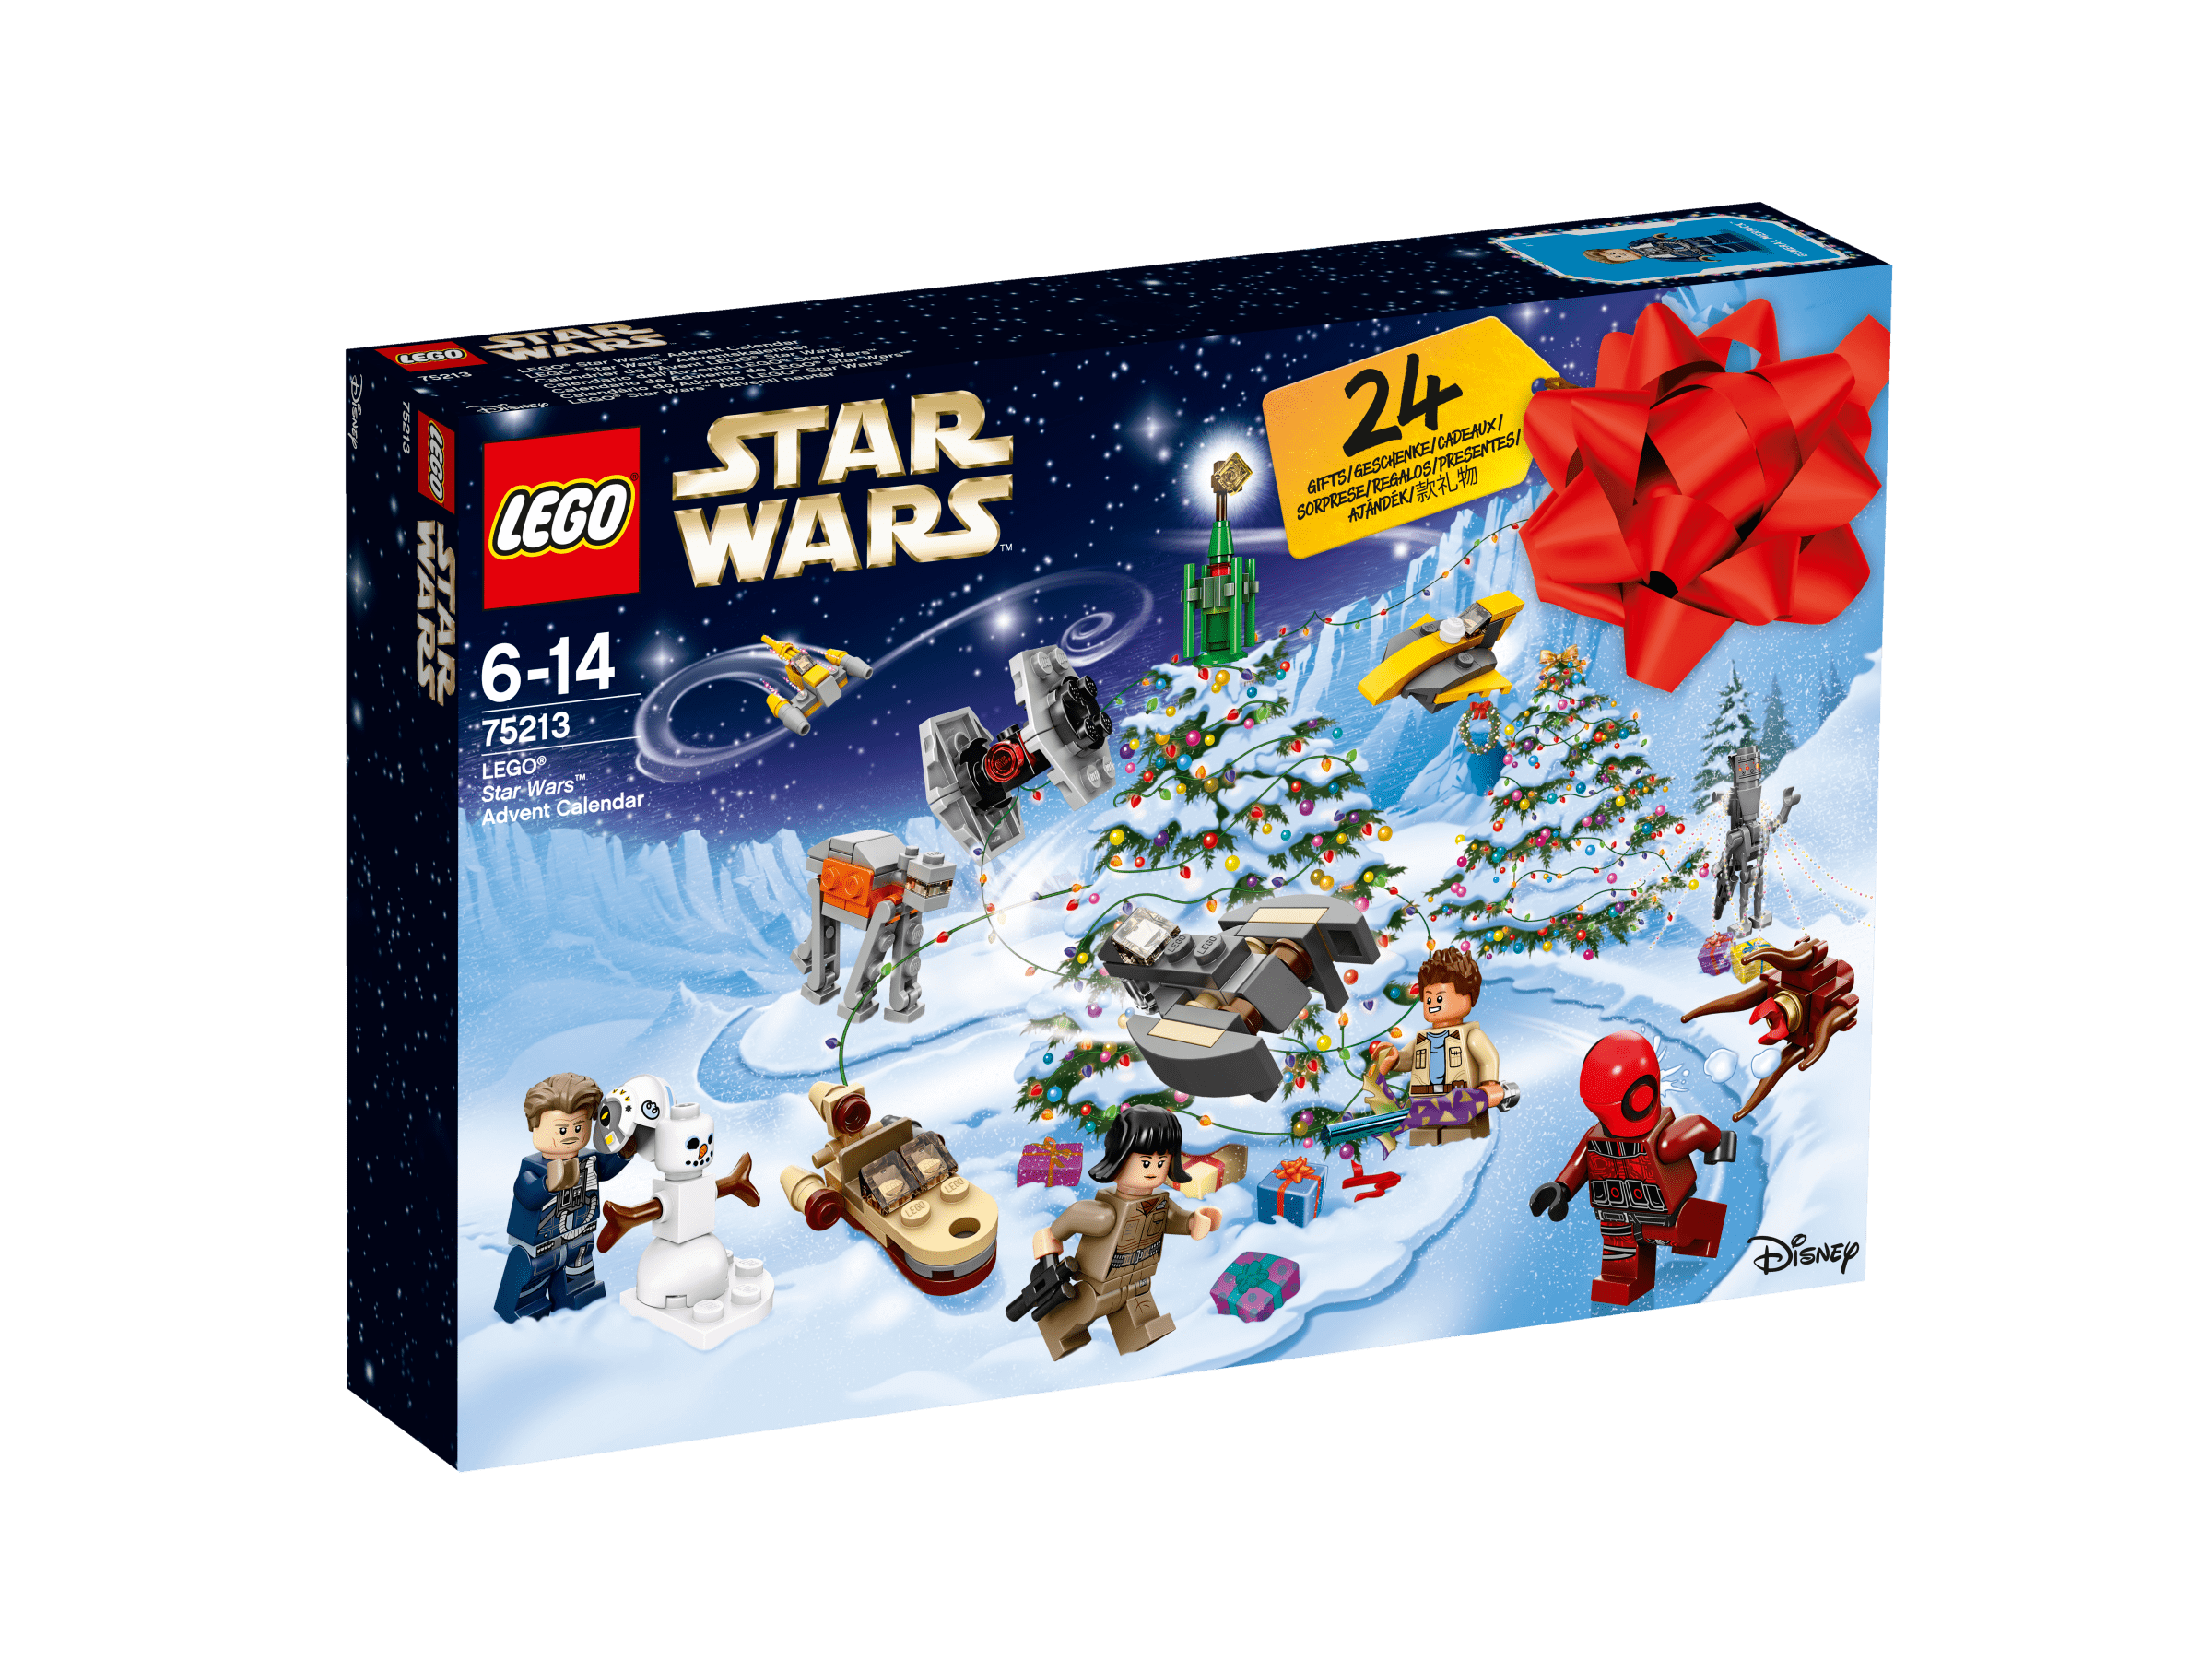 Lego Star Wars July 2018 Advent Calendar